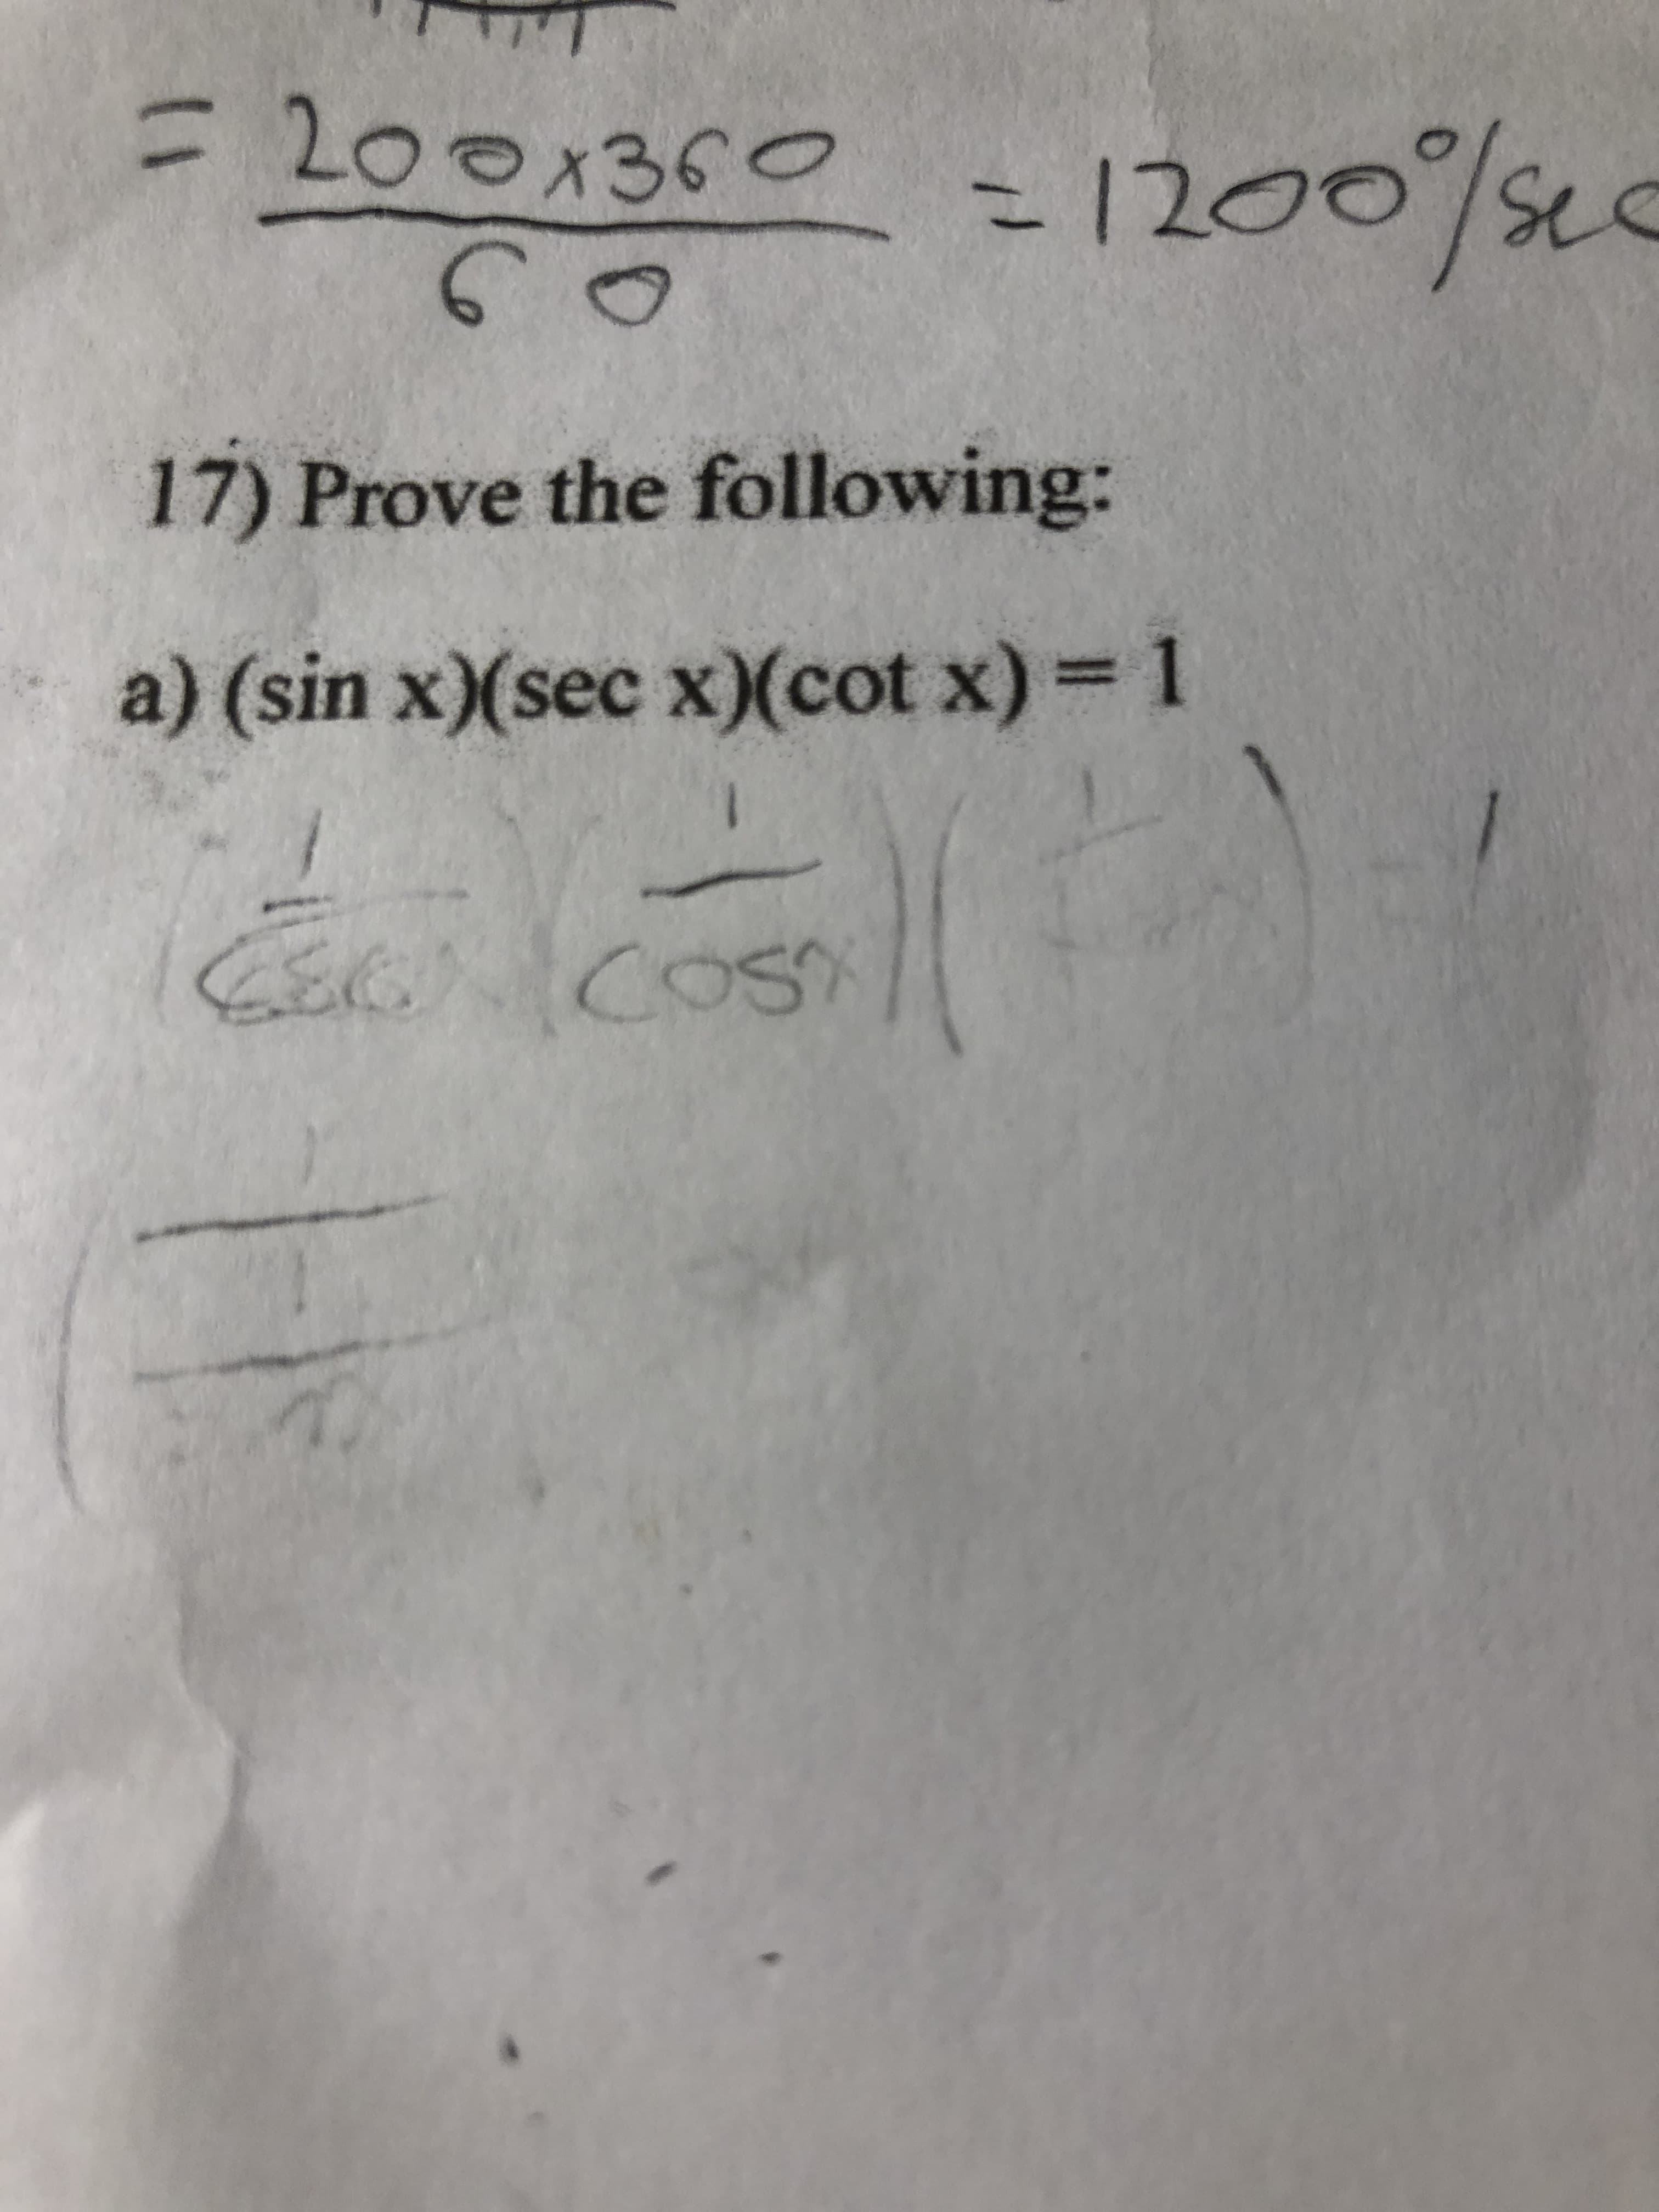 17) Prove the following:
a) (sin x)(sec x)(cot x) 1
